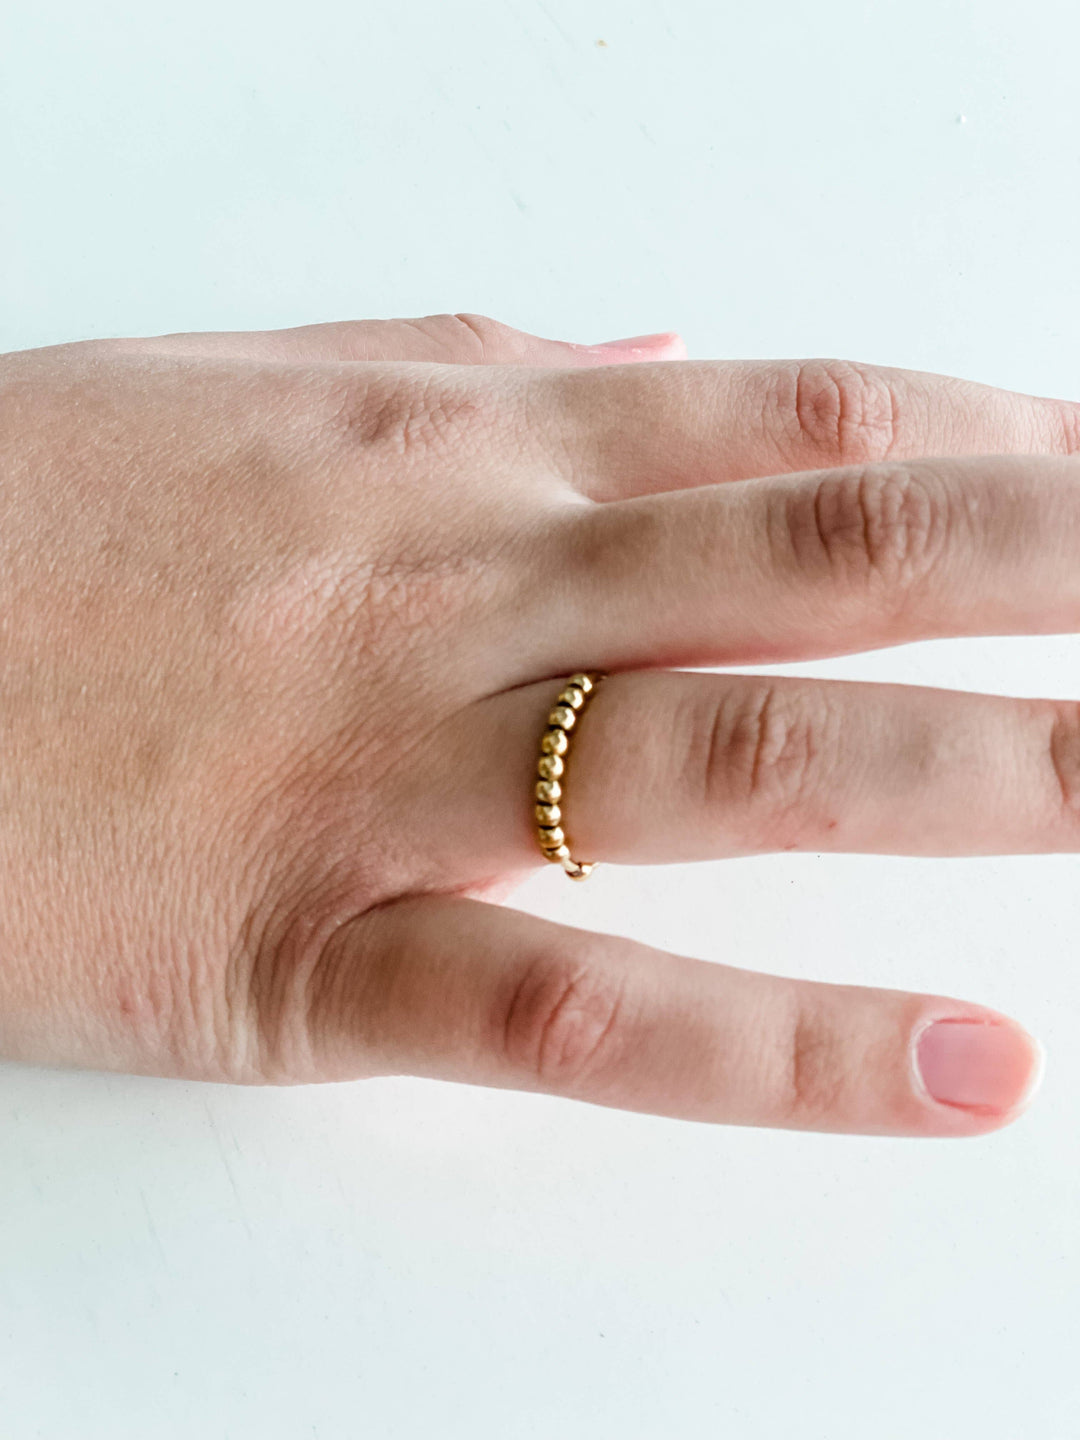 Rings - Fidget Ring "Gold"